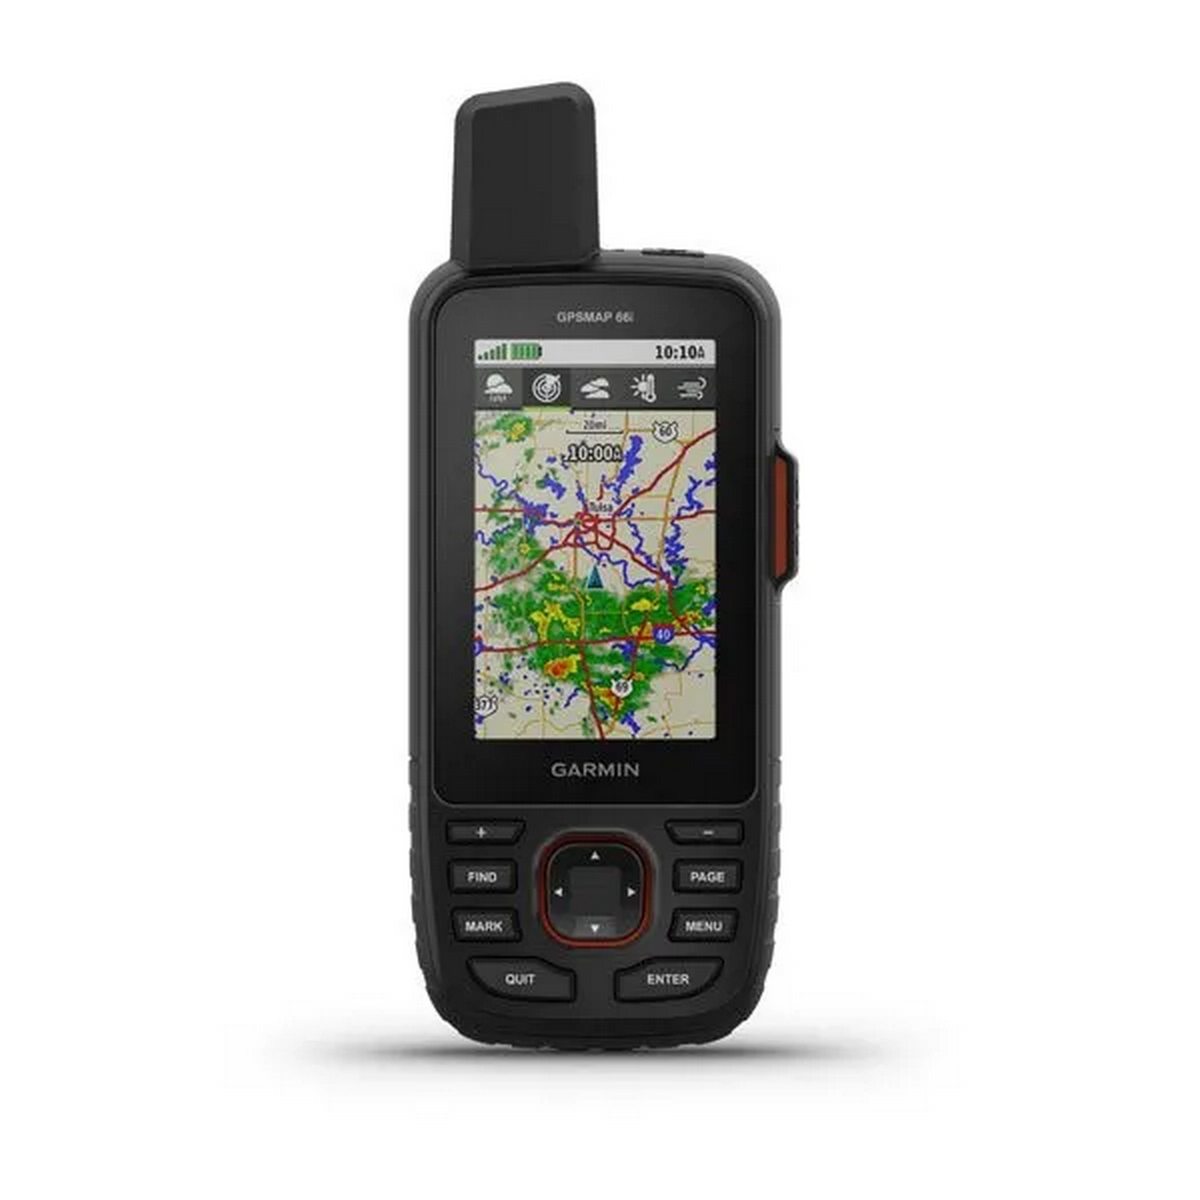 Туристический GPS навигатор и спутниковый коммуникатор Garmin GPSMAP 66i 010-02088-01